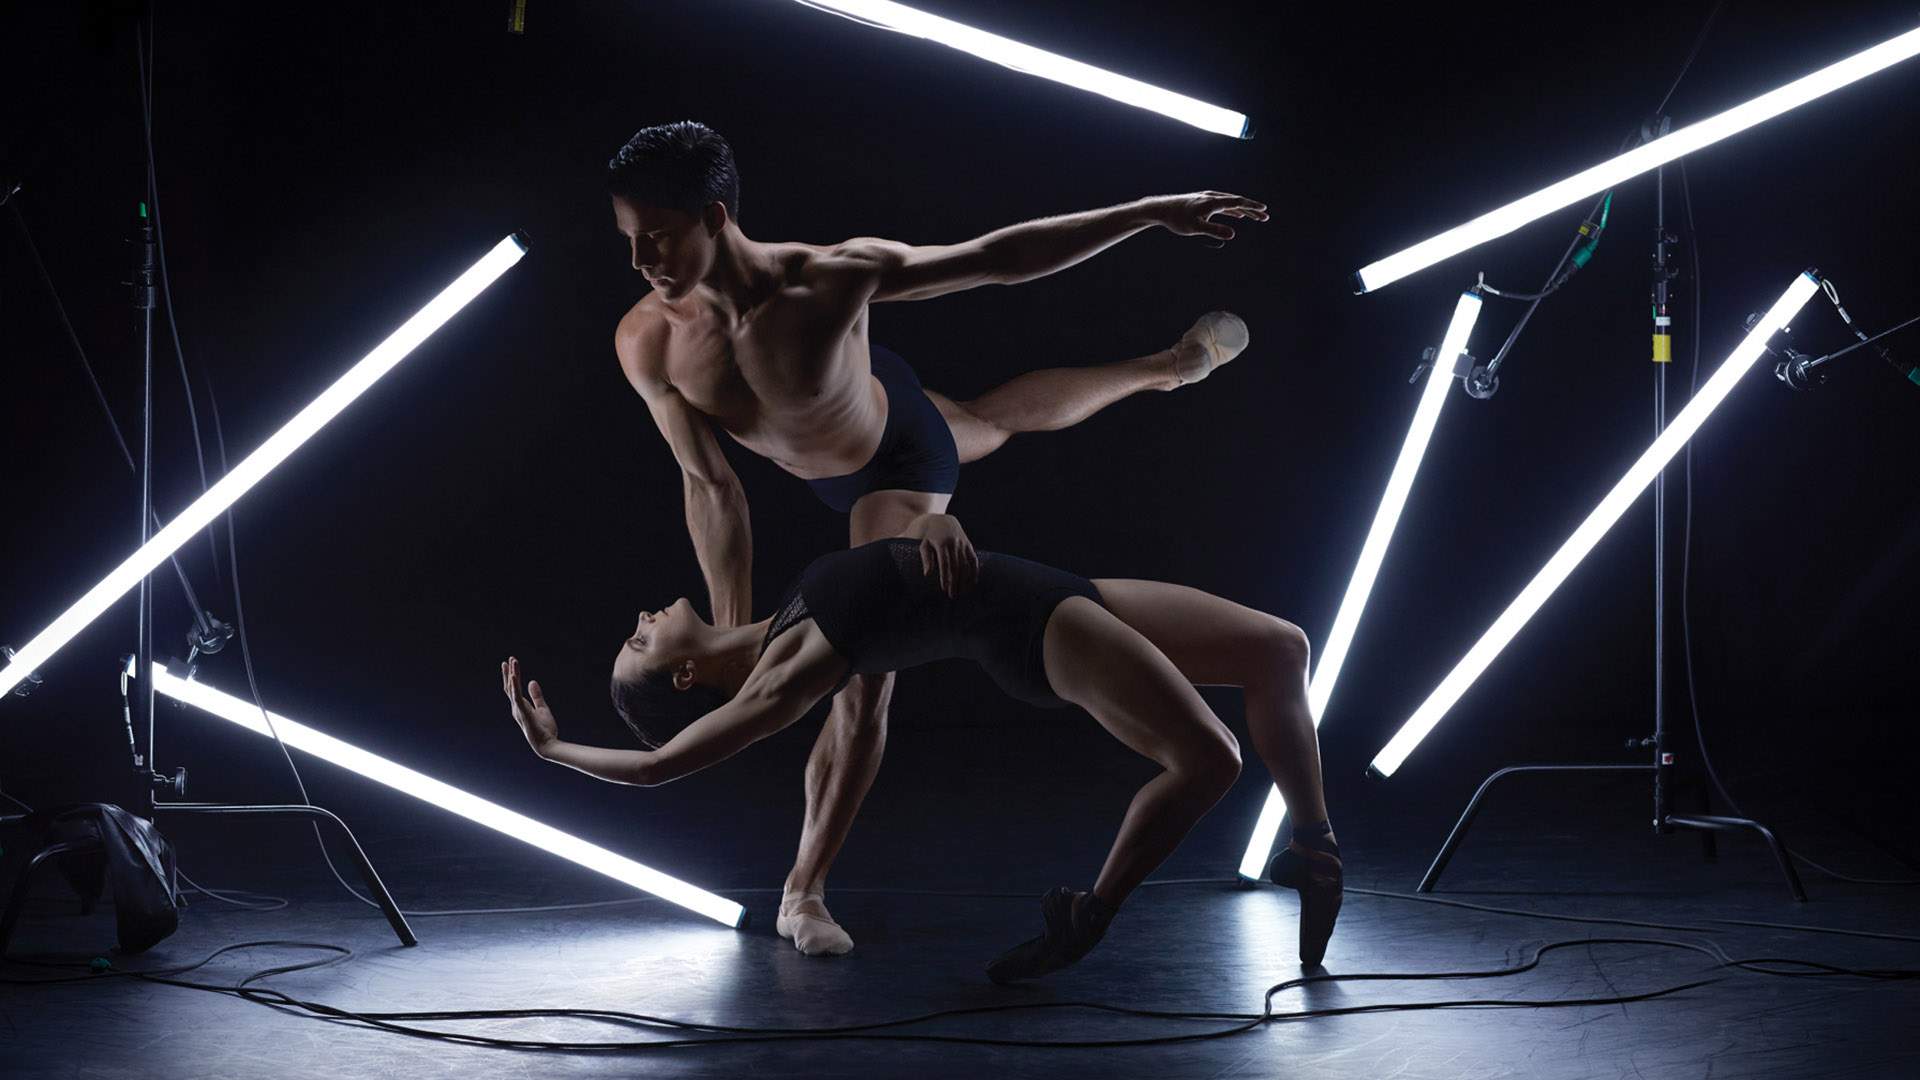 Bespoke 2019 — Queensland Ballet